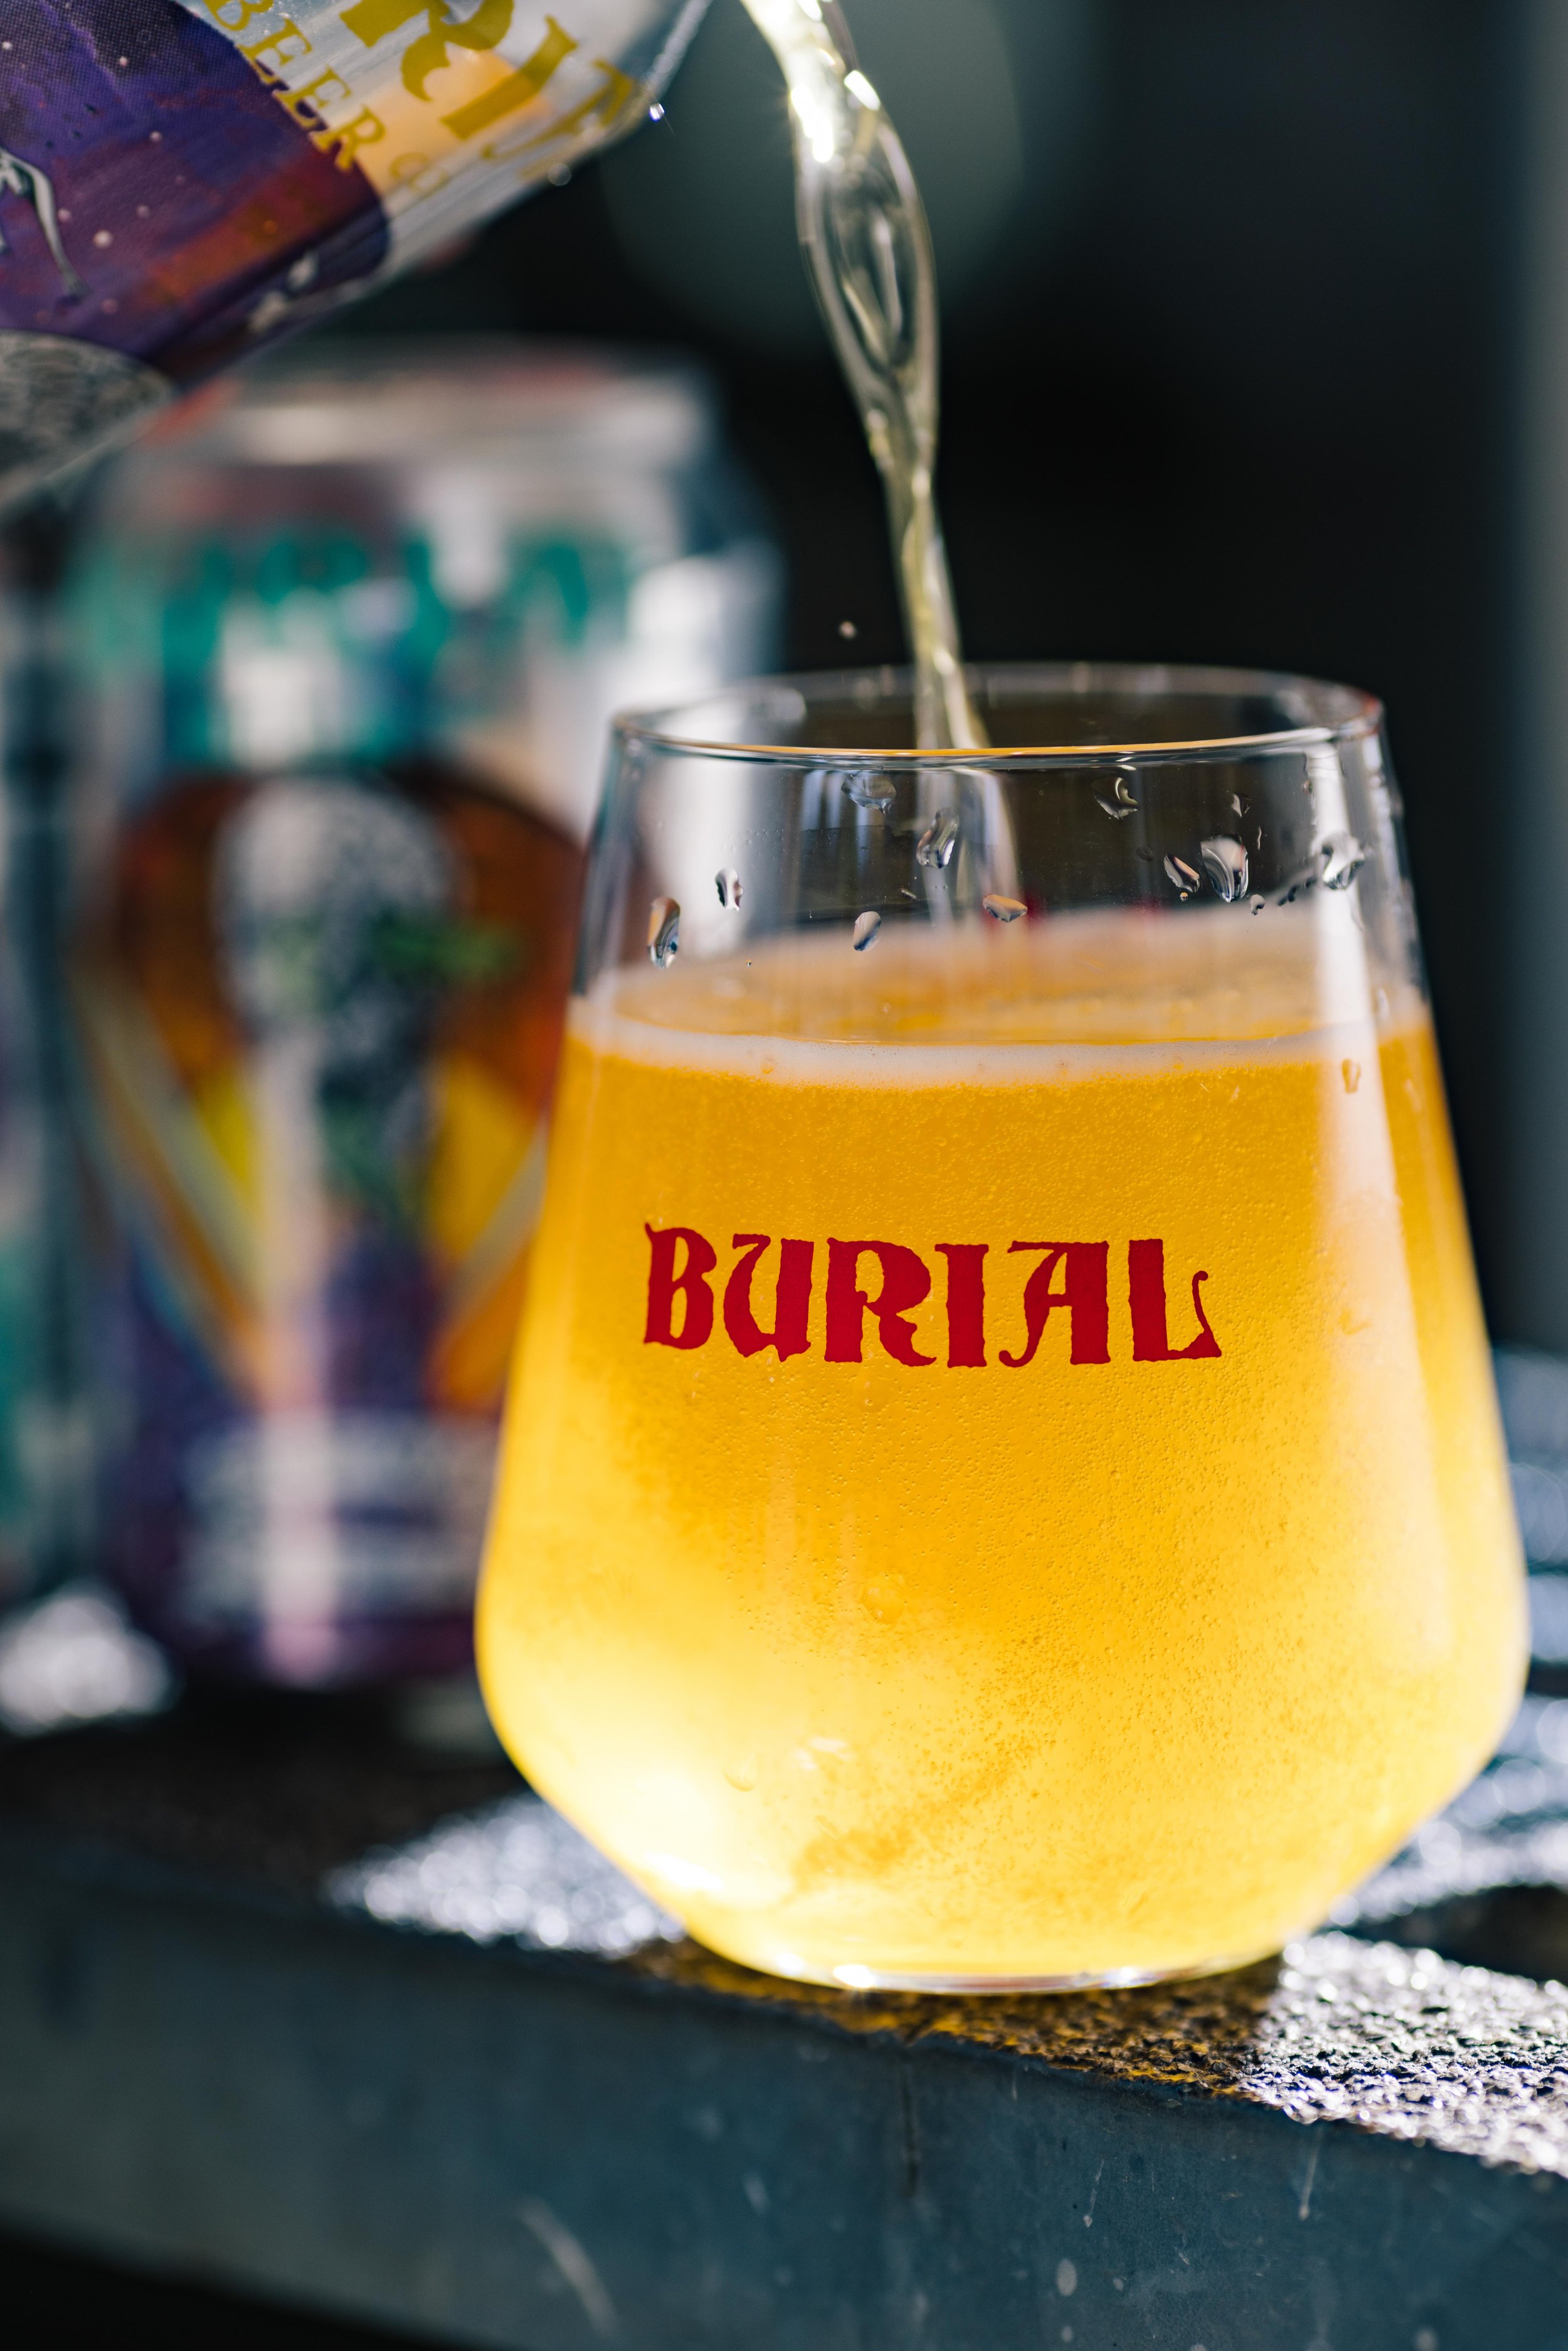  Burial Beer by Evan Anderson 